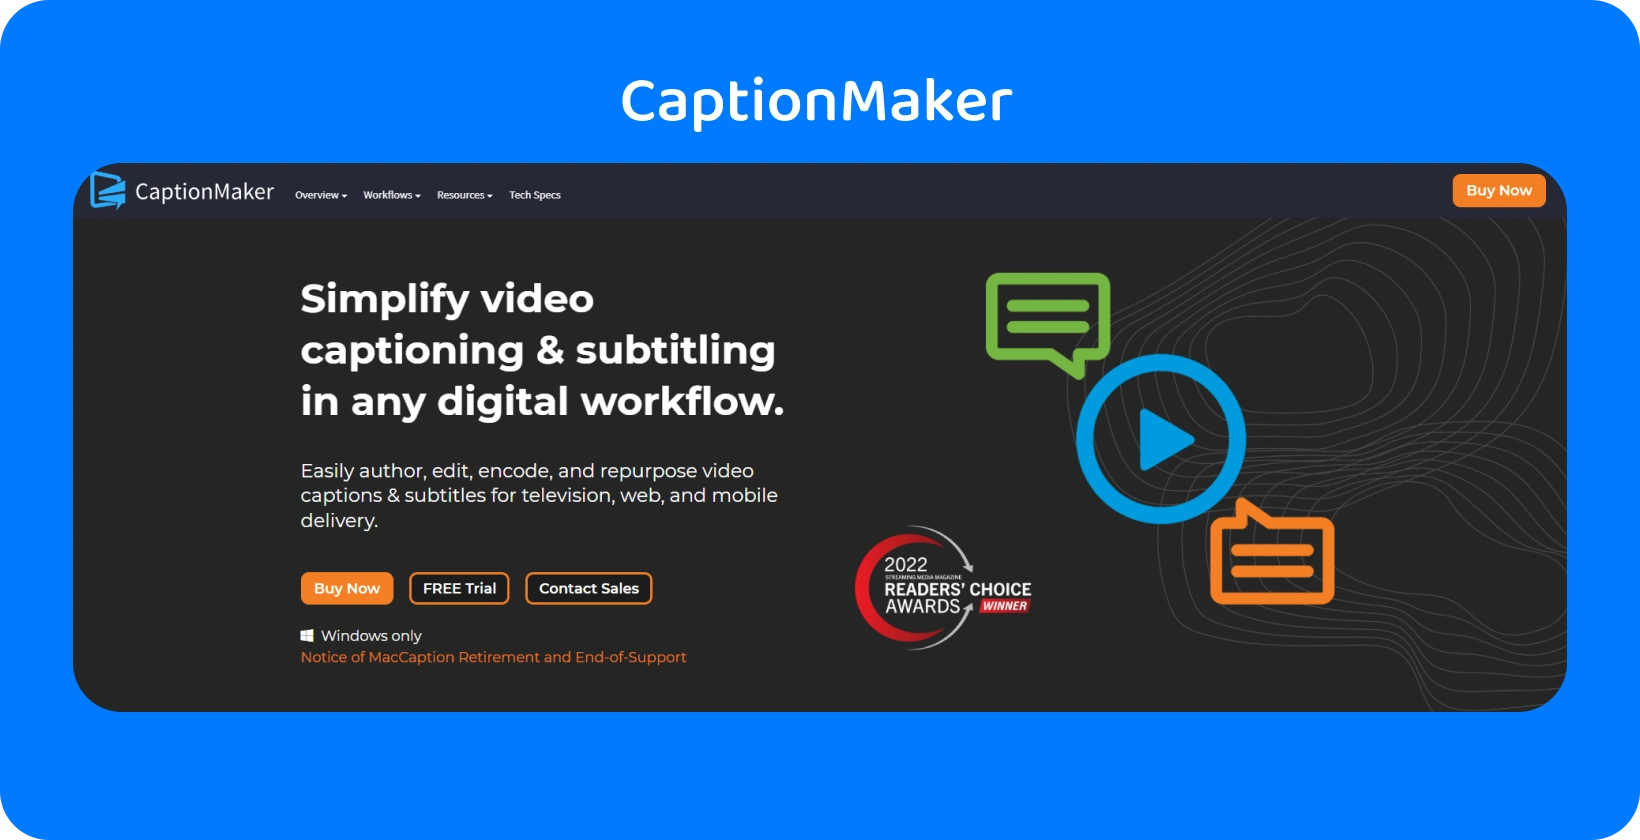 Rozhranie CaptionMaker na titulkovanie videa a titulkovanie zjednodušuje digitálne pracovné postupy naprieč zariadeniami.